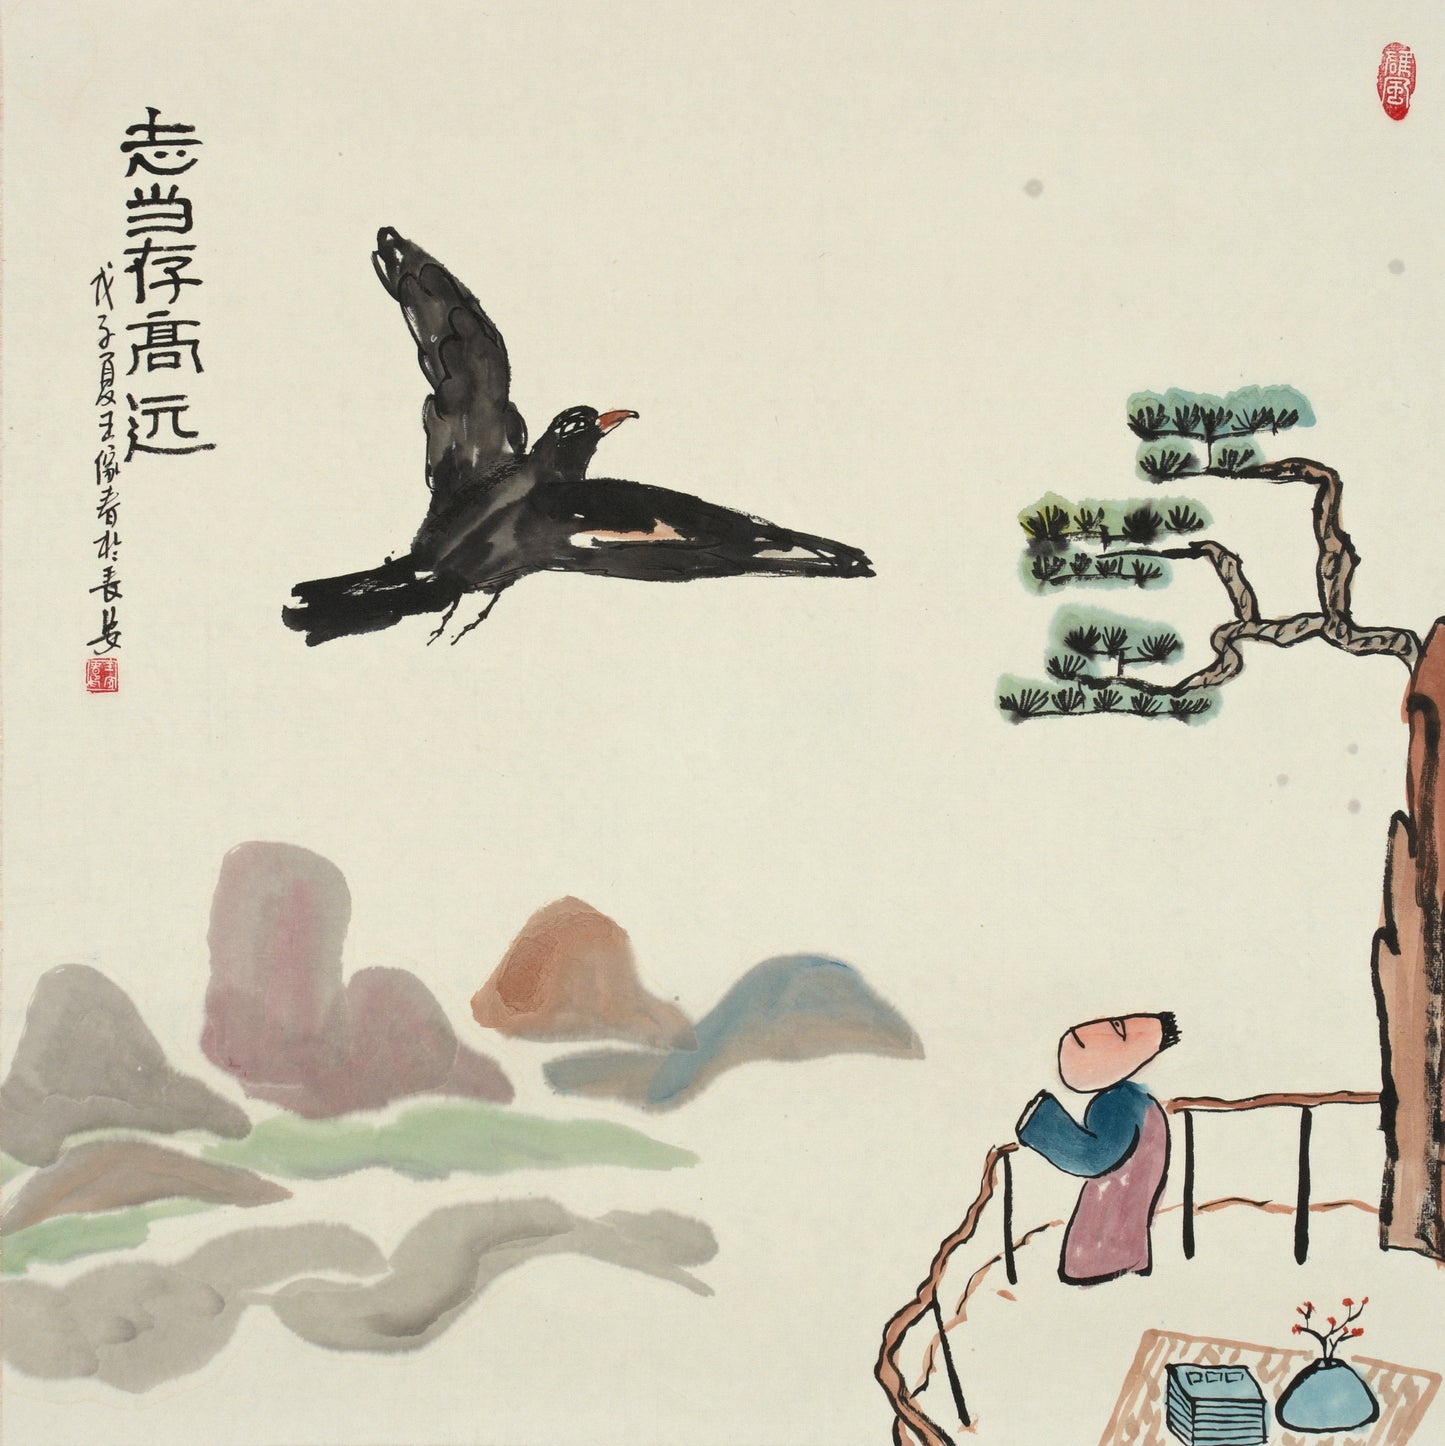 【数藏元】哲理中国画系列数字藏品王家春《志当存高远》展品勿拍